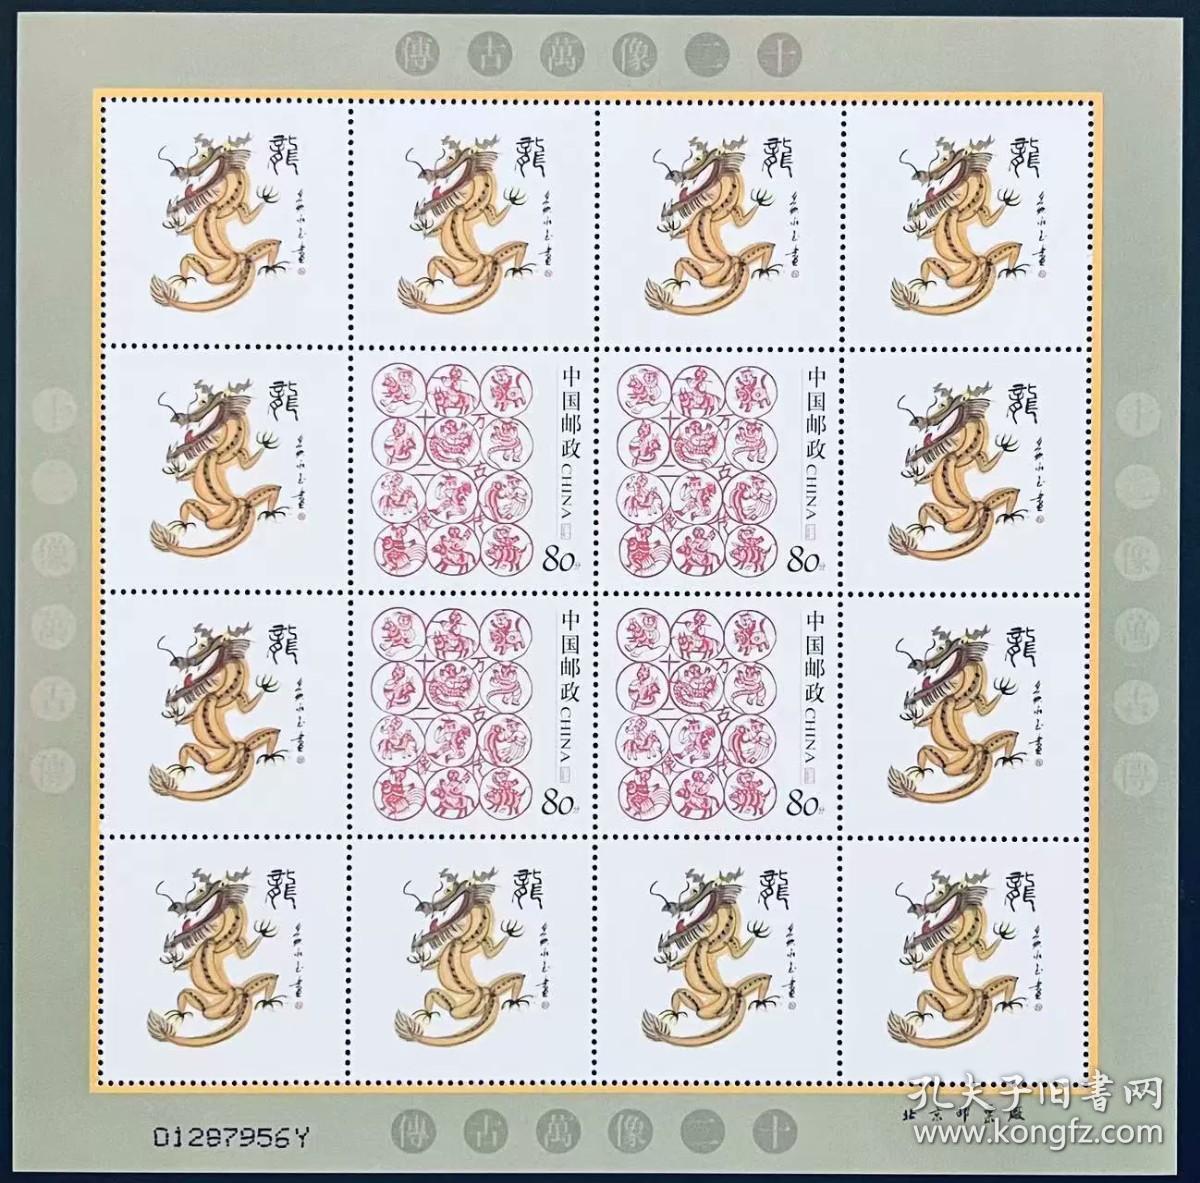 中国个性化邮票十二像万古传黄永玉大师十二像之生肖龙版张